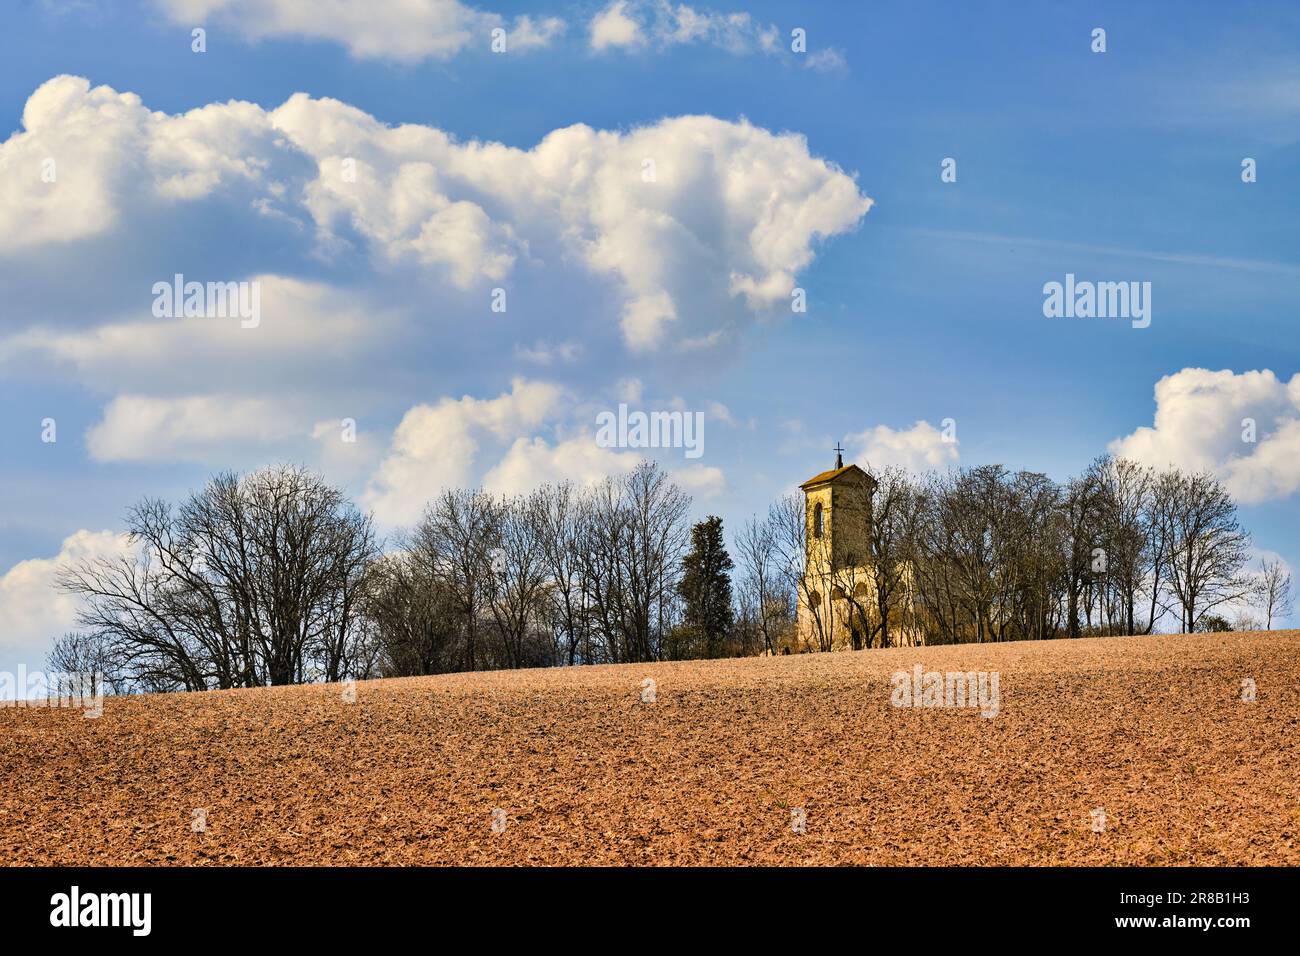 Immagine minima delle rovine di un'antica chiesa abbandonata con campanile in pietra tra alberi secchi in una giornata di sole. Nuvole su cielo blu soleggiato, campo asciutto. Foto Stock